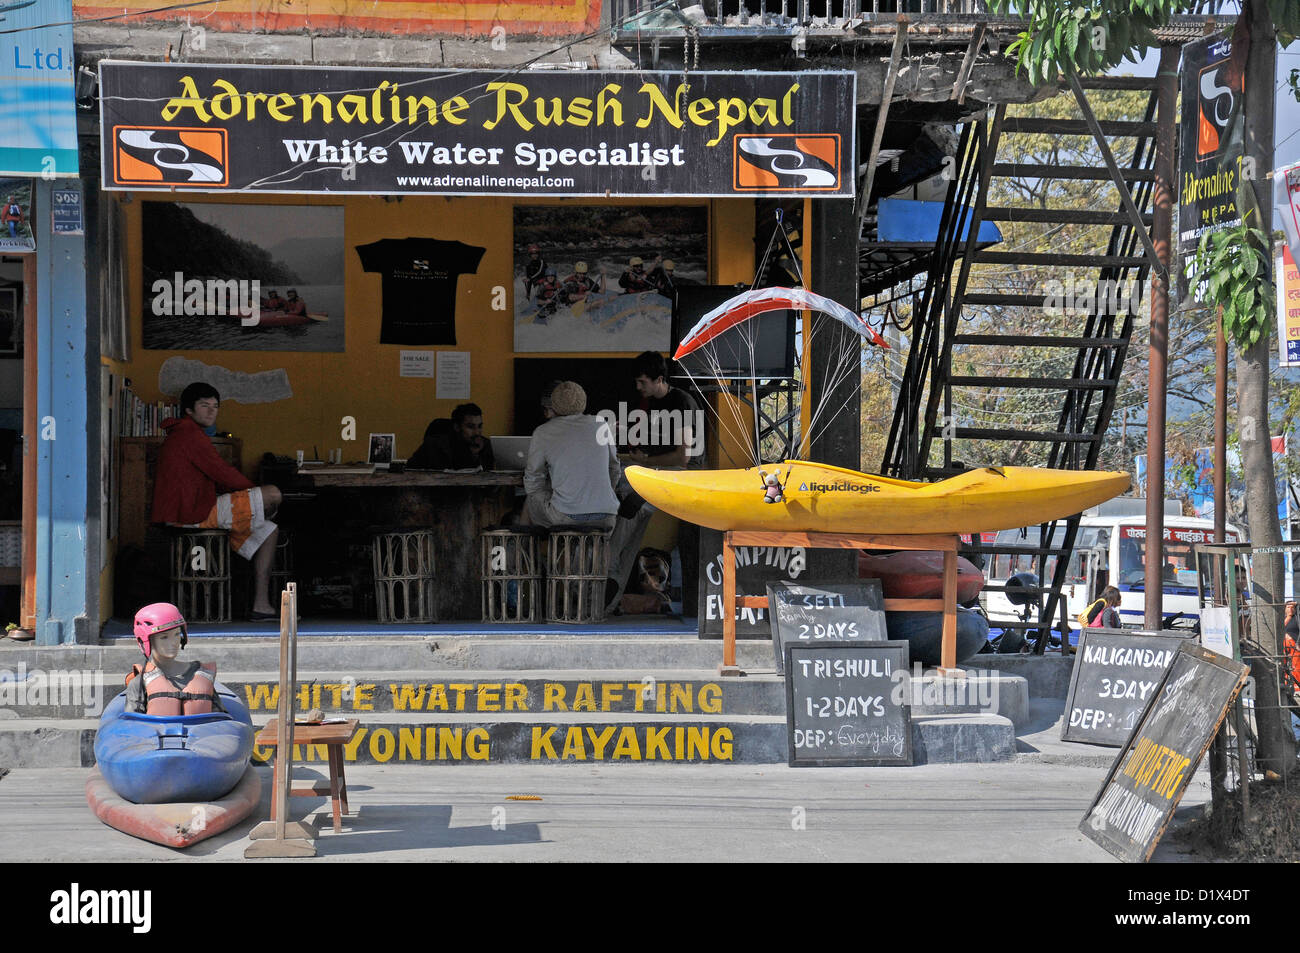 Adrenaline Rush Nepal shop, White water speciallst, Pokhara, Nepal Stock Photo